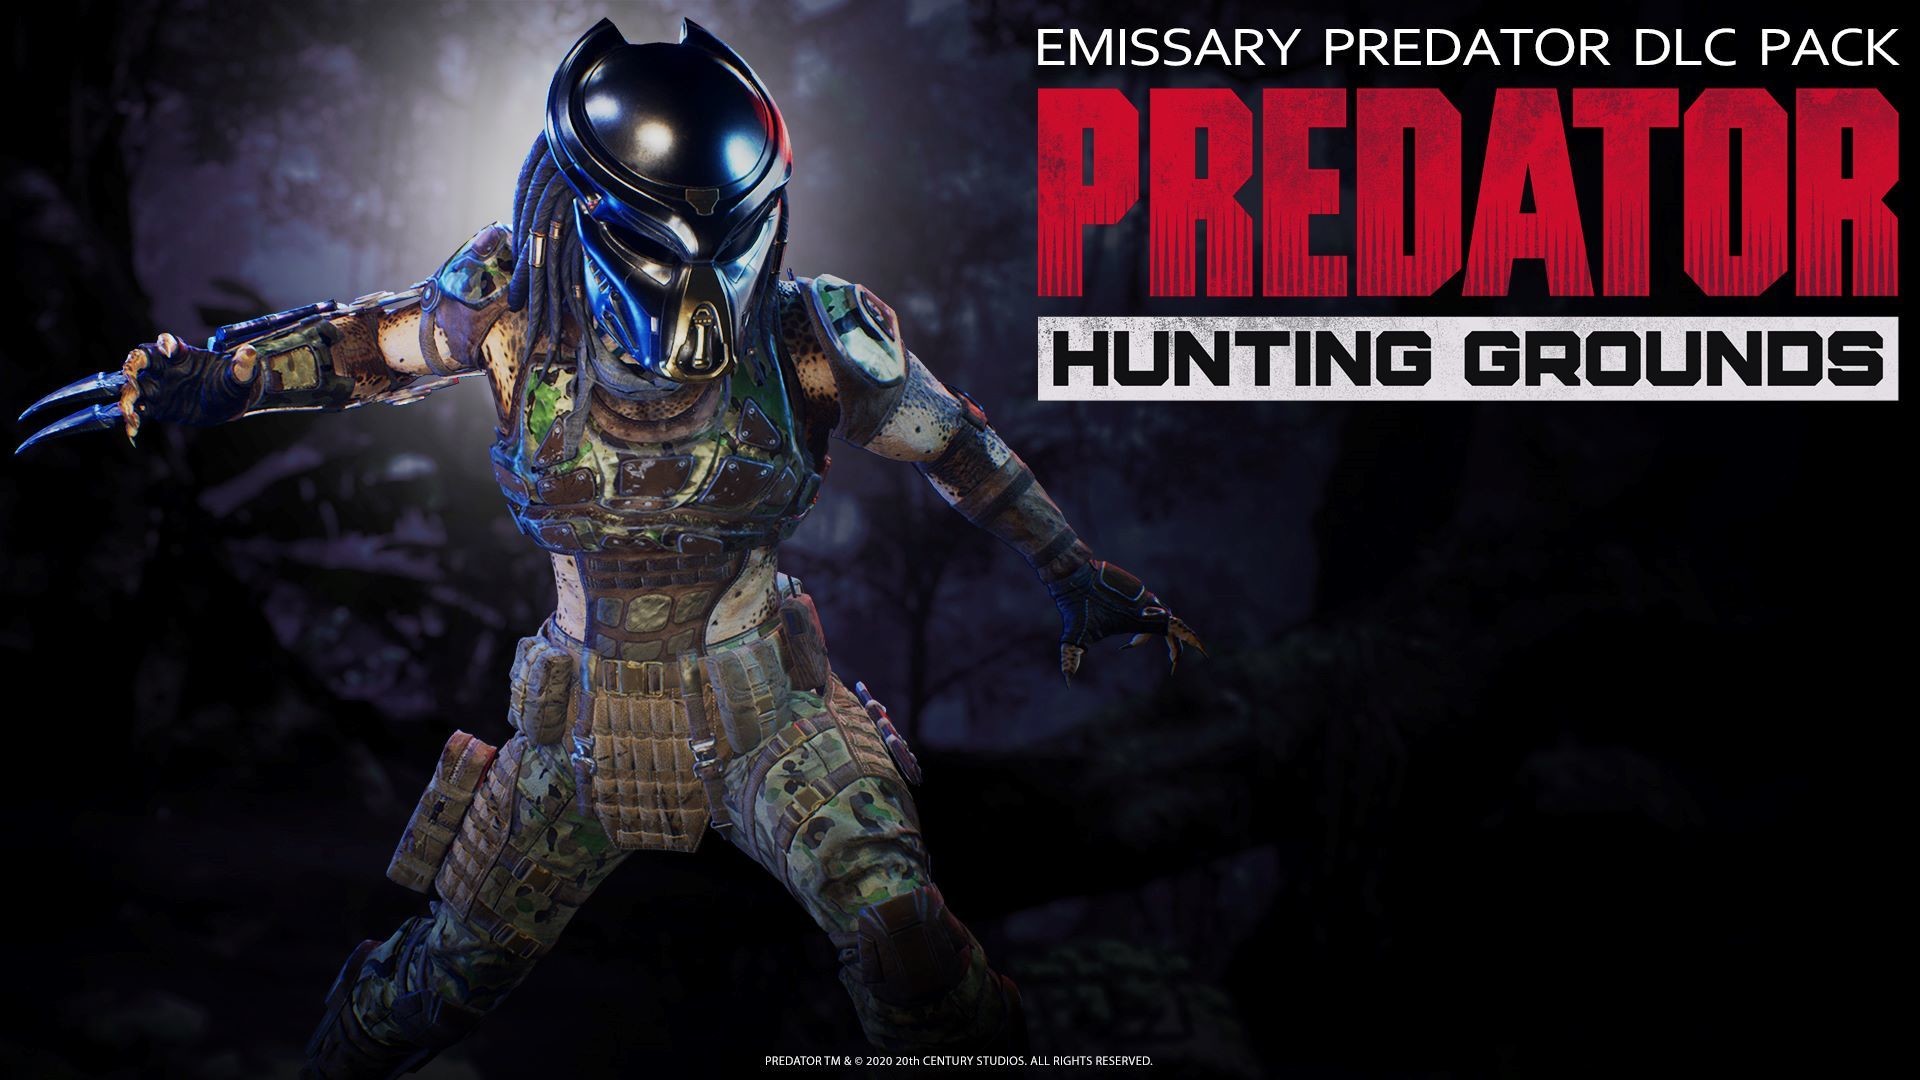 Predator: Hunting Grounds - Emissary Predator DLC Pack Featured Screenshot #1